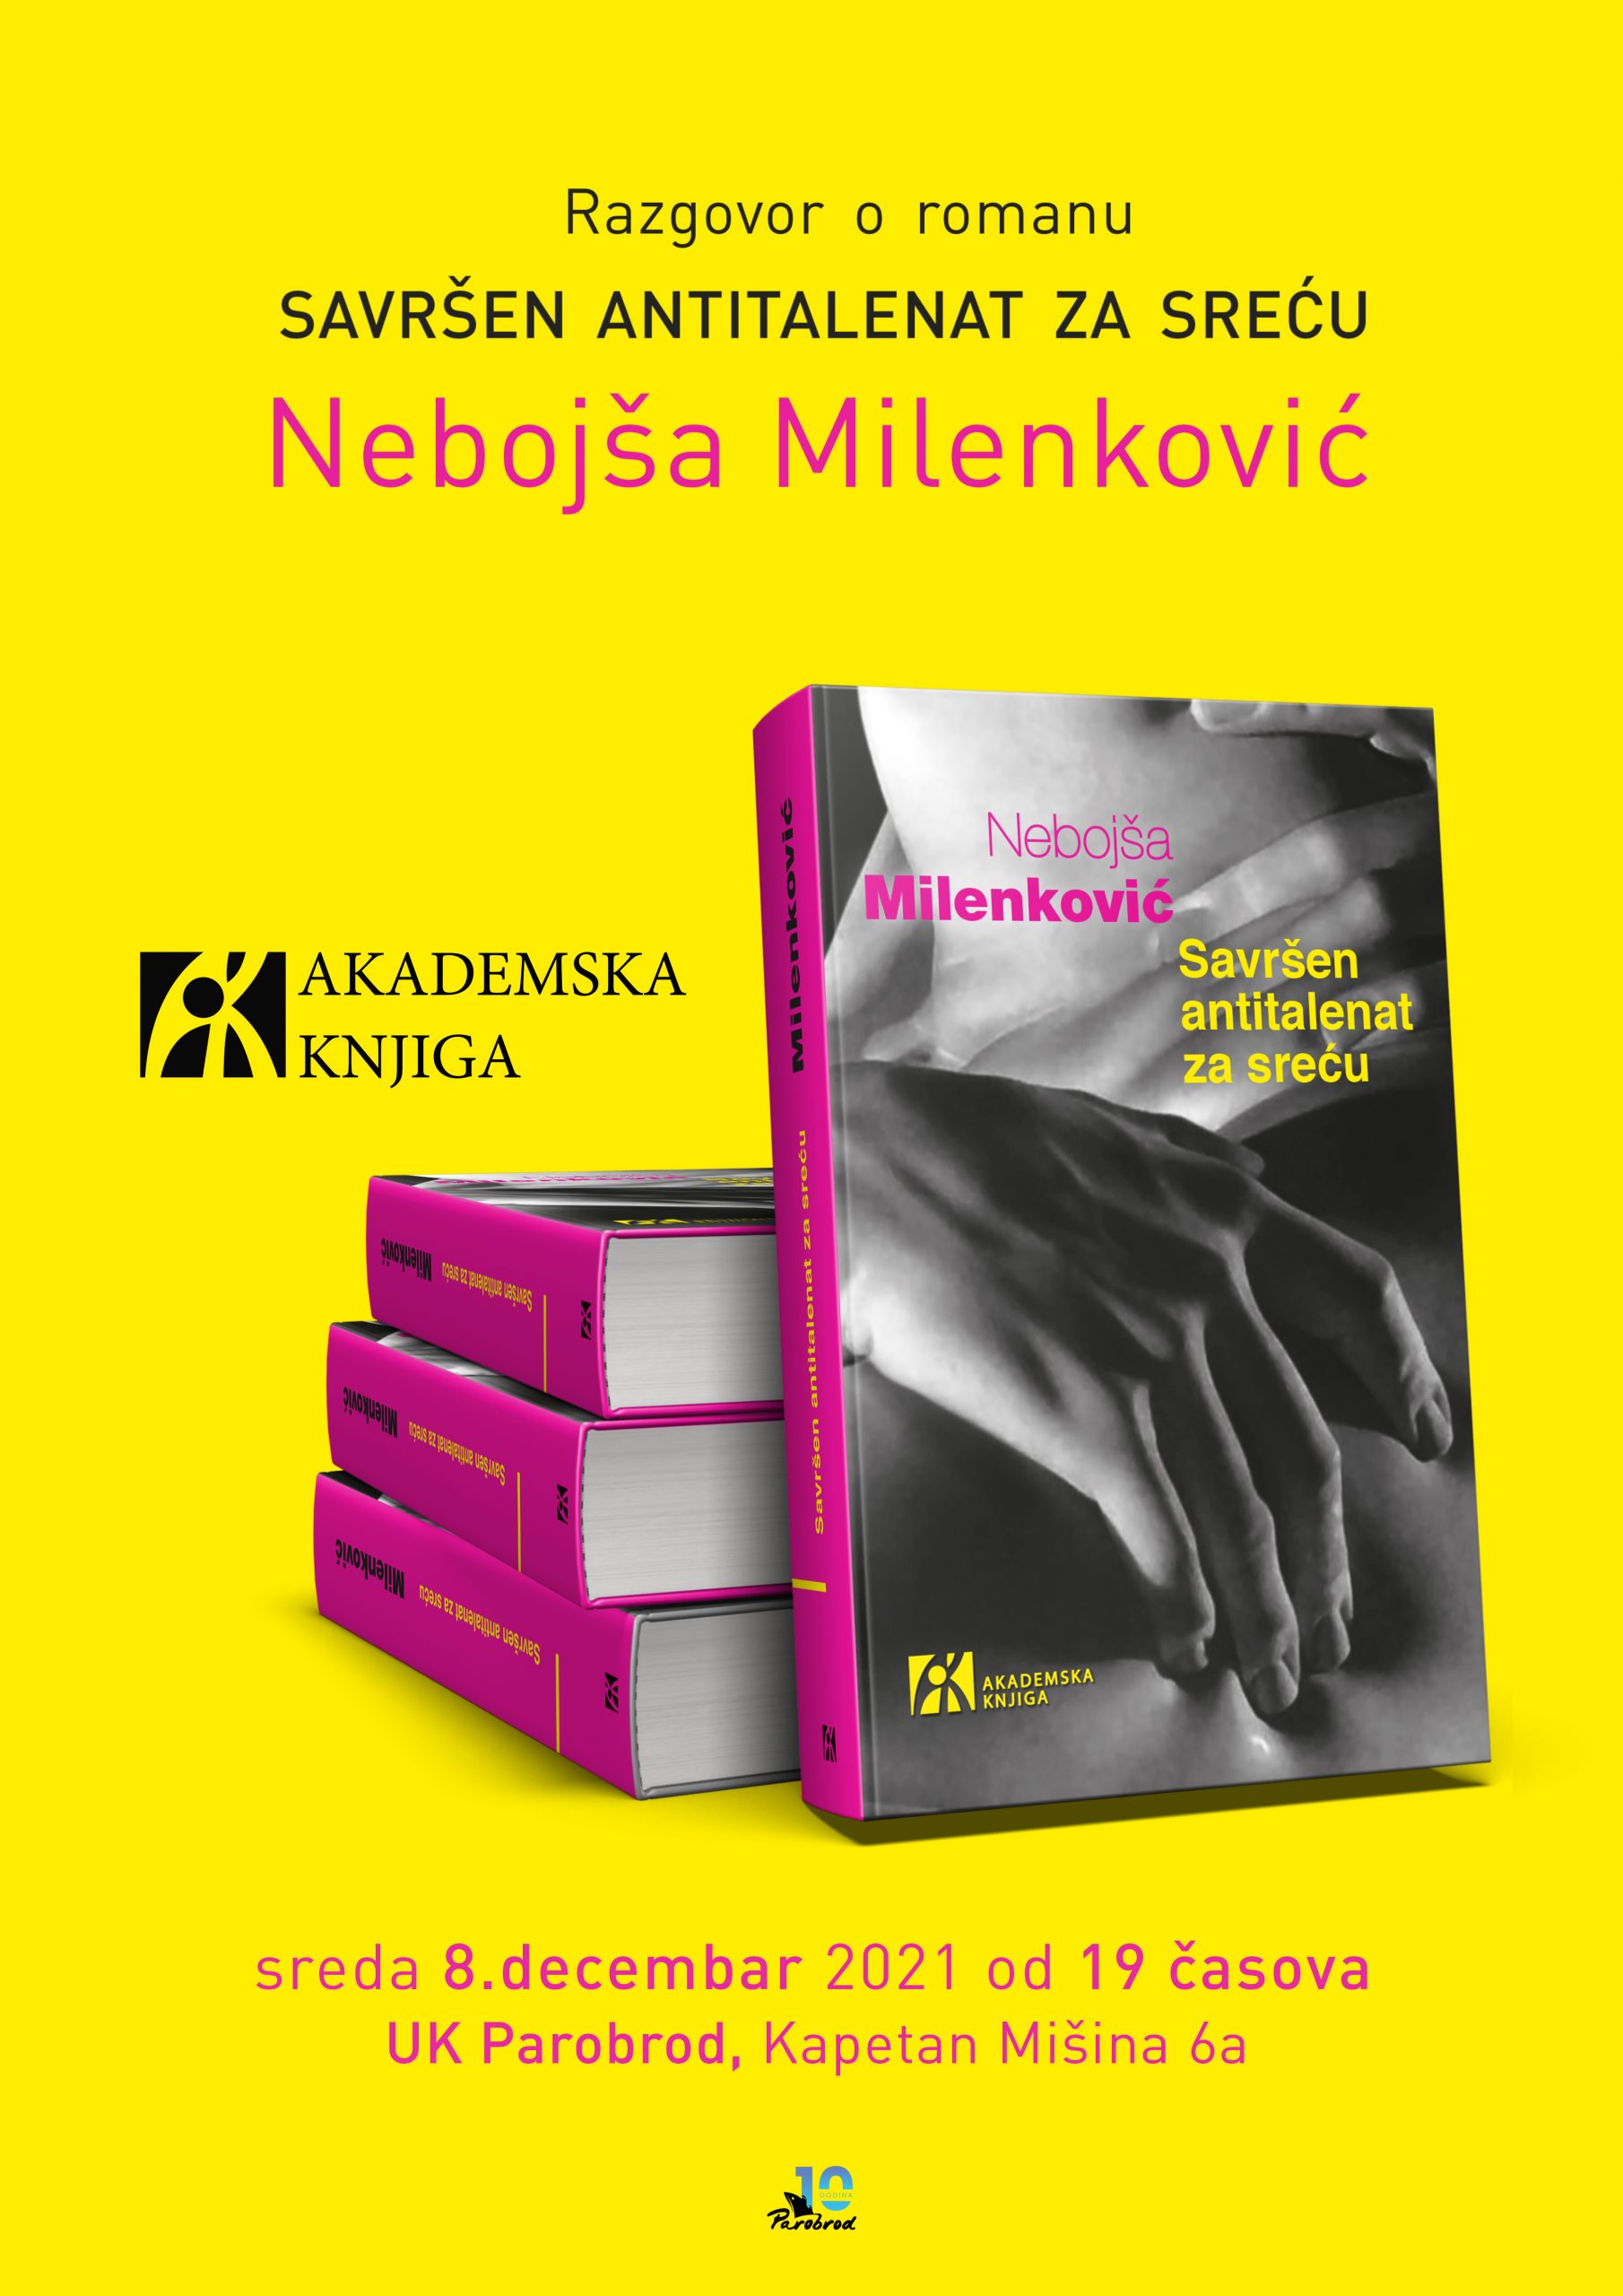 Razgovor o romanu “Savršen antitalenat za sreću” Nebojša Milenković